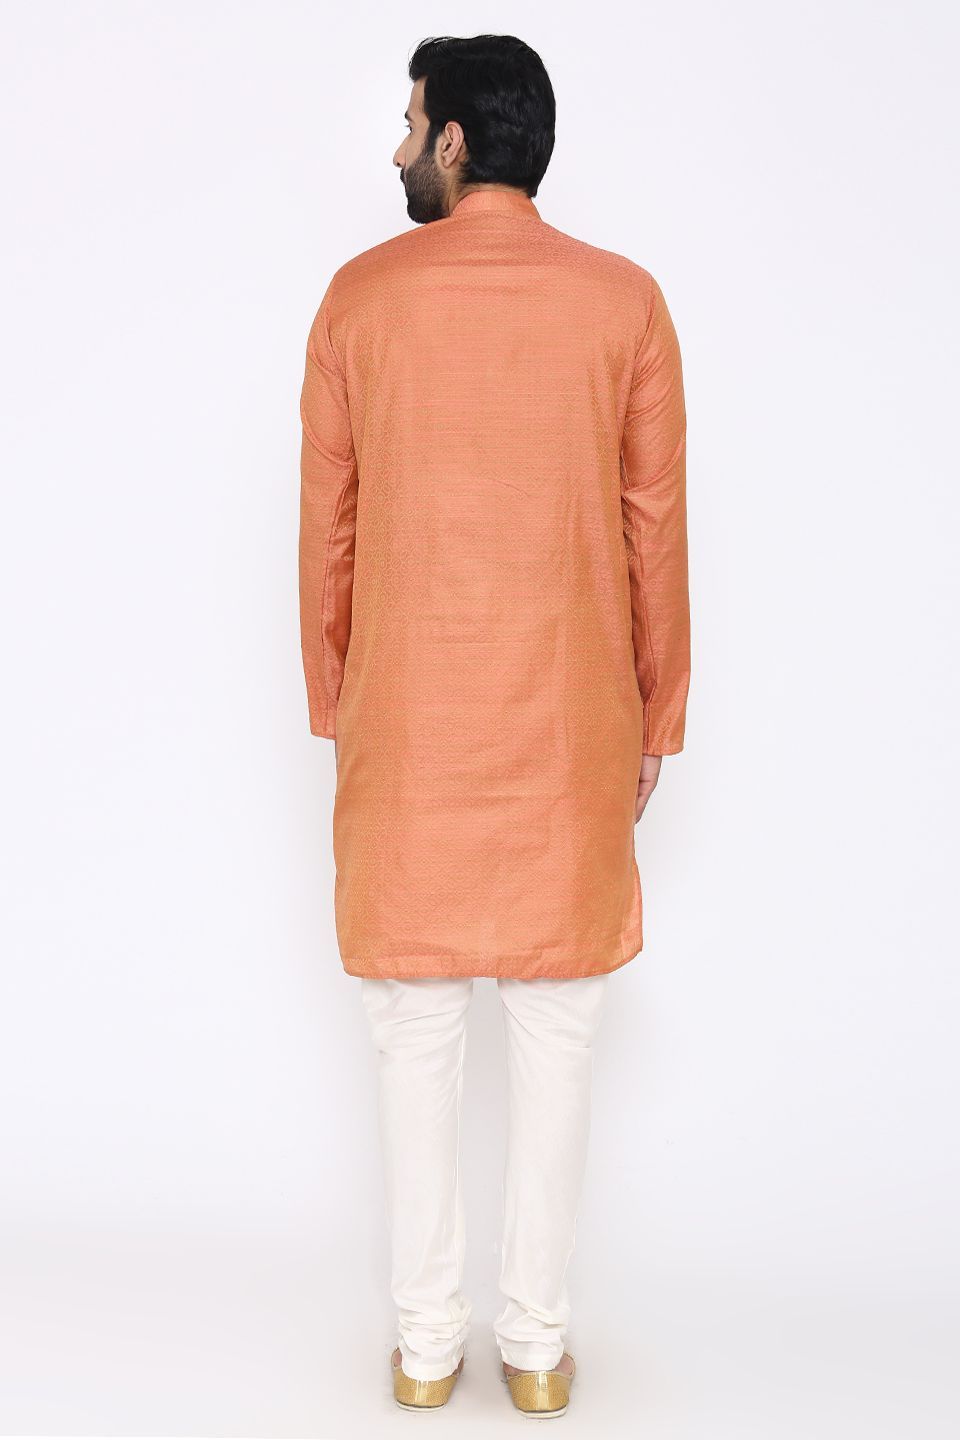 Banarasi Art Silk Cotton Blend Orange Long Kurta